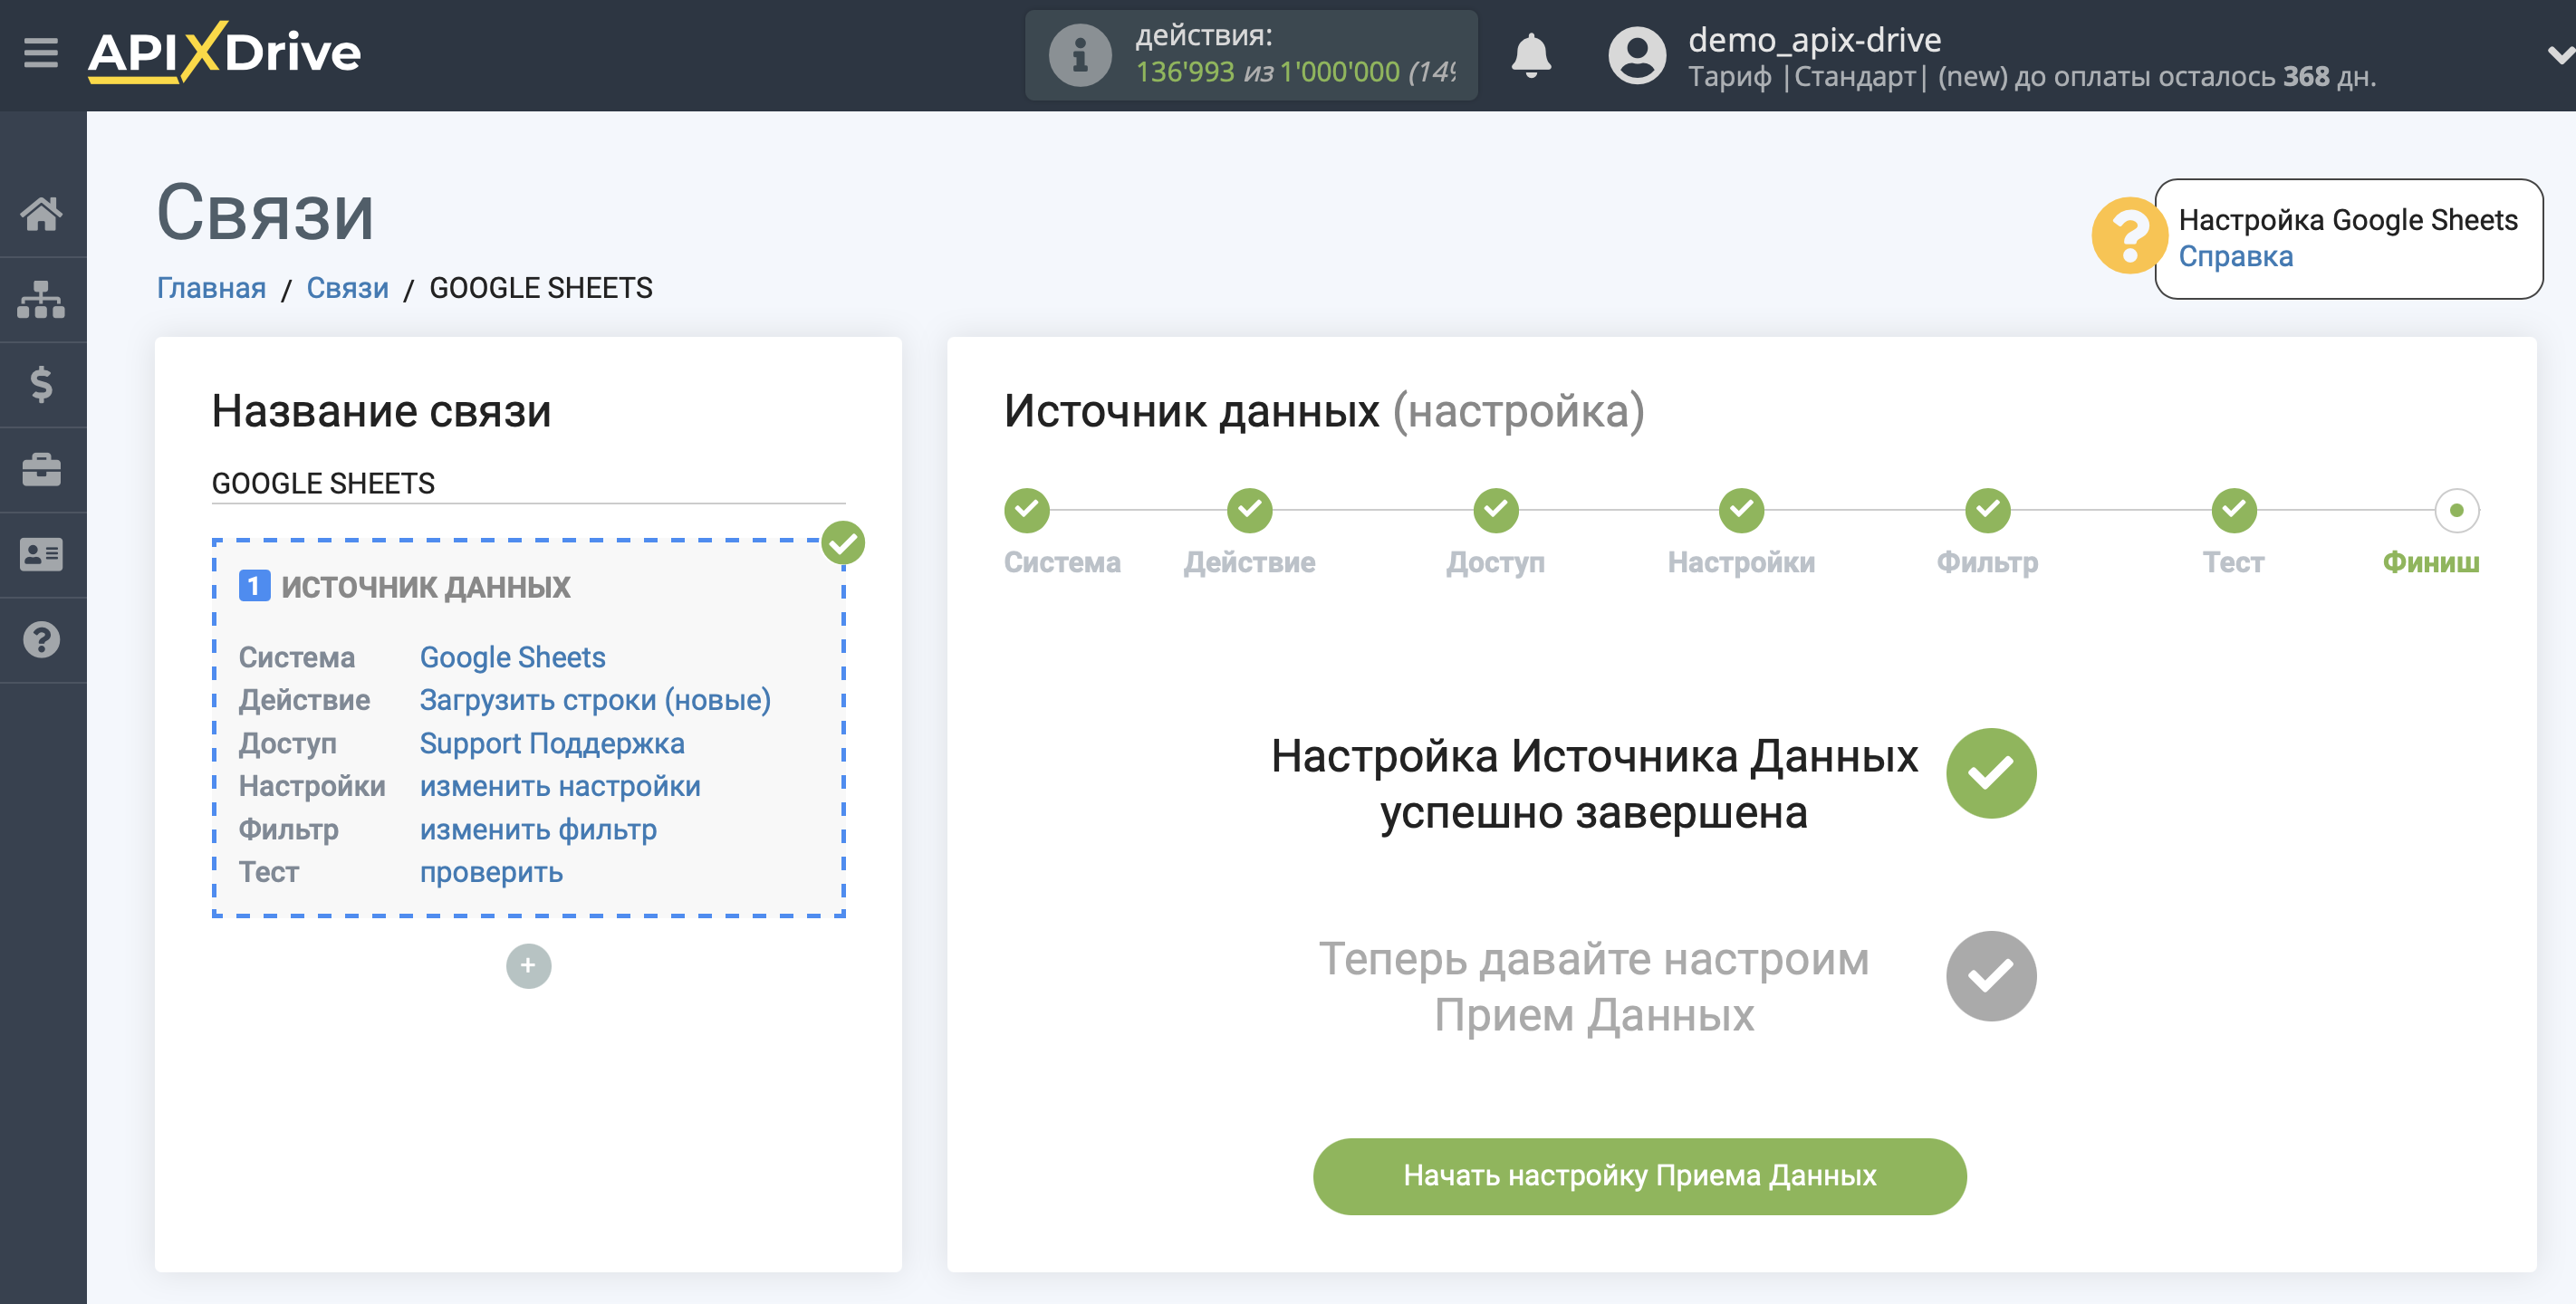 Настройка UKR.NET в качестве Приема данных | Переход к настройке Приема данных